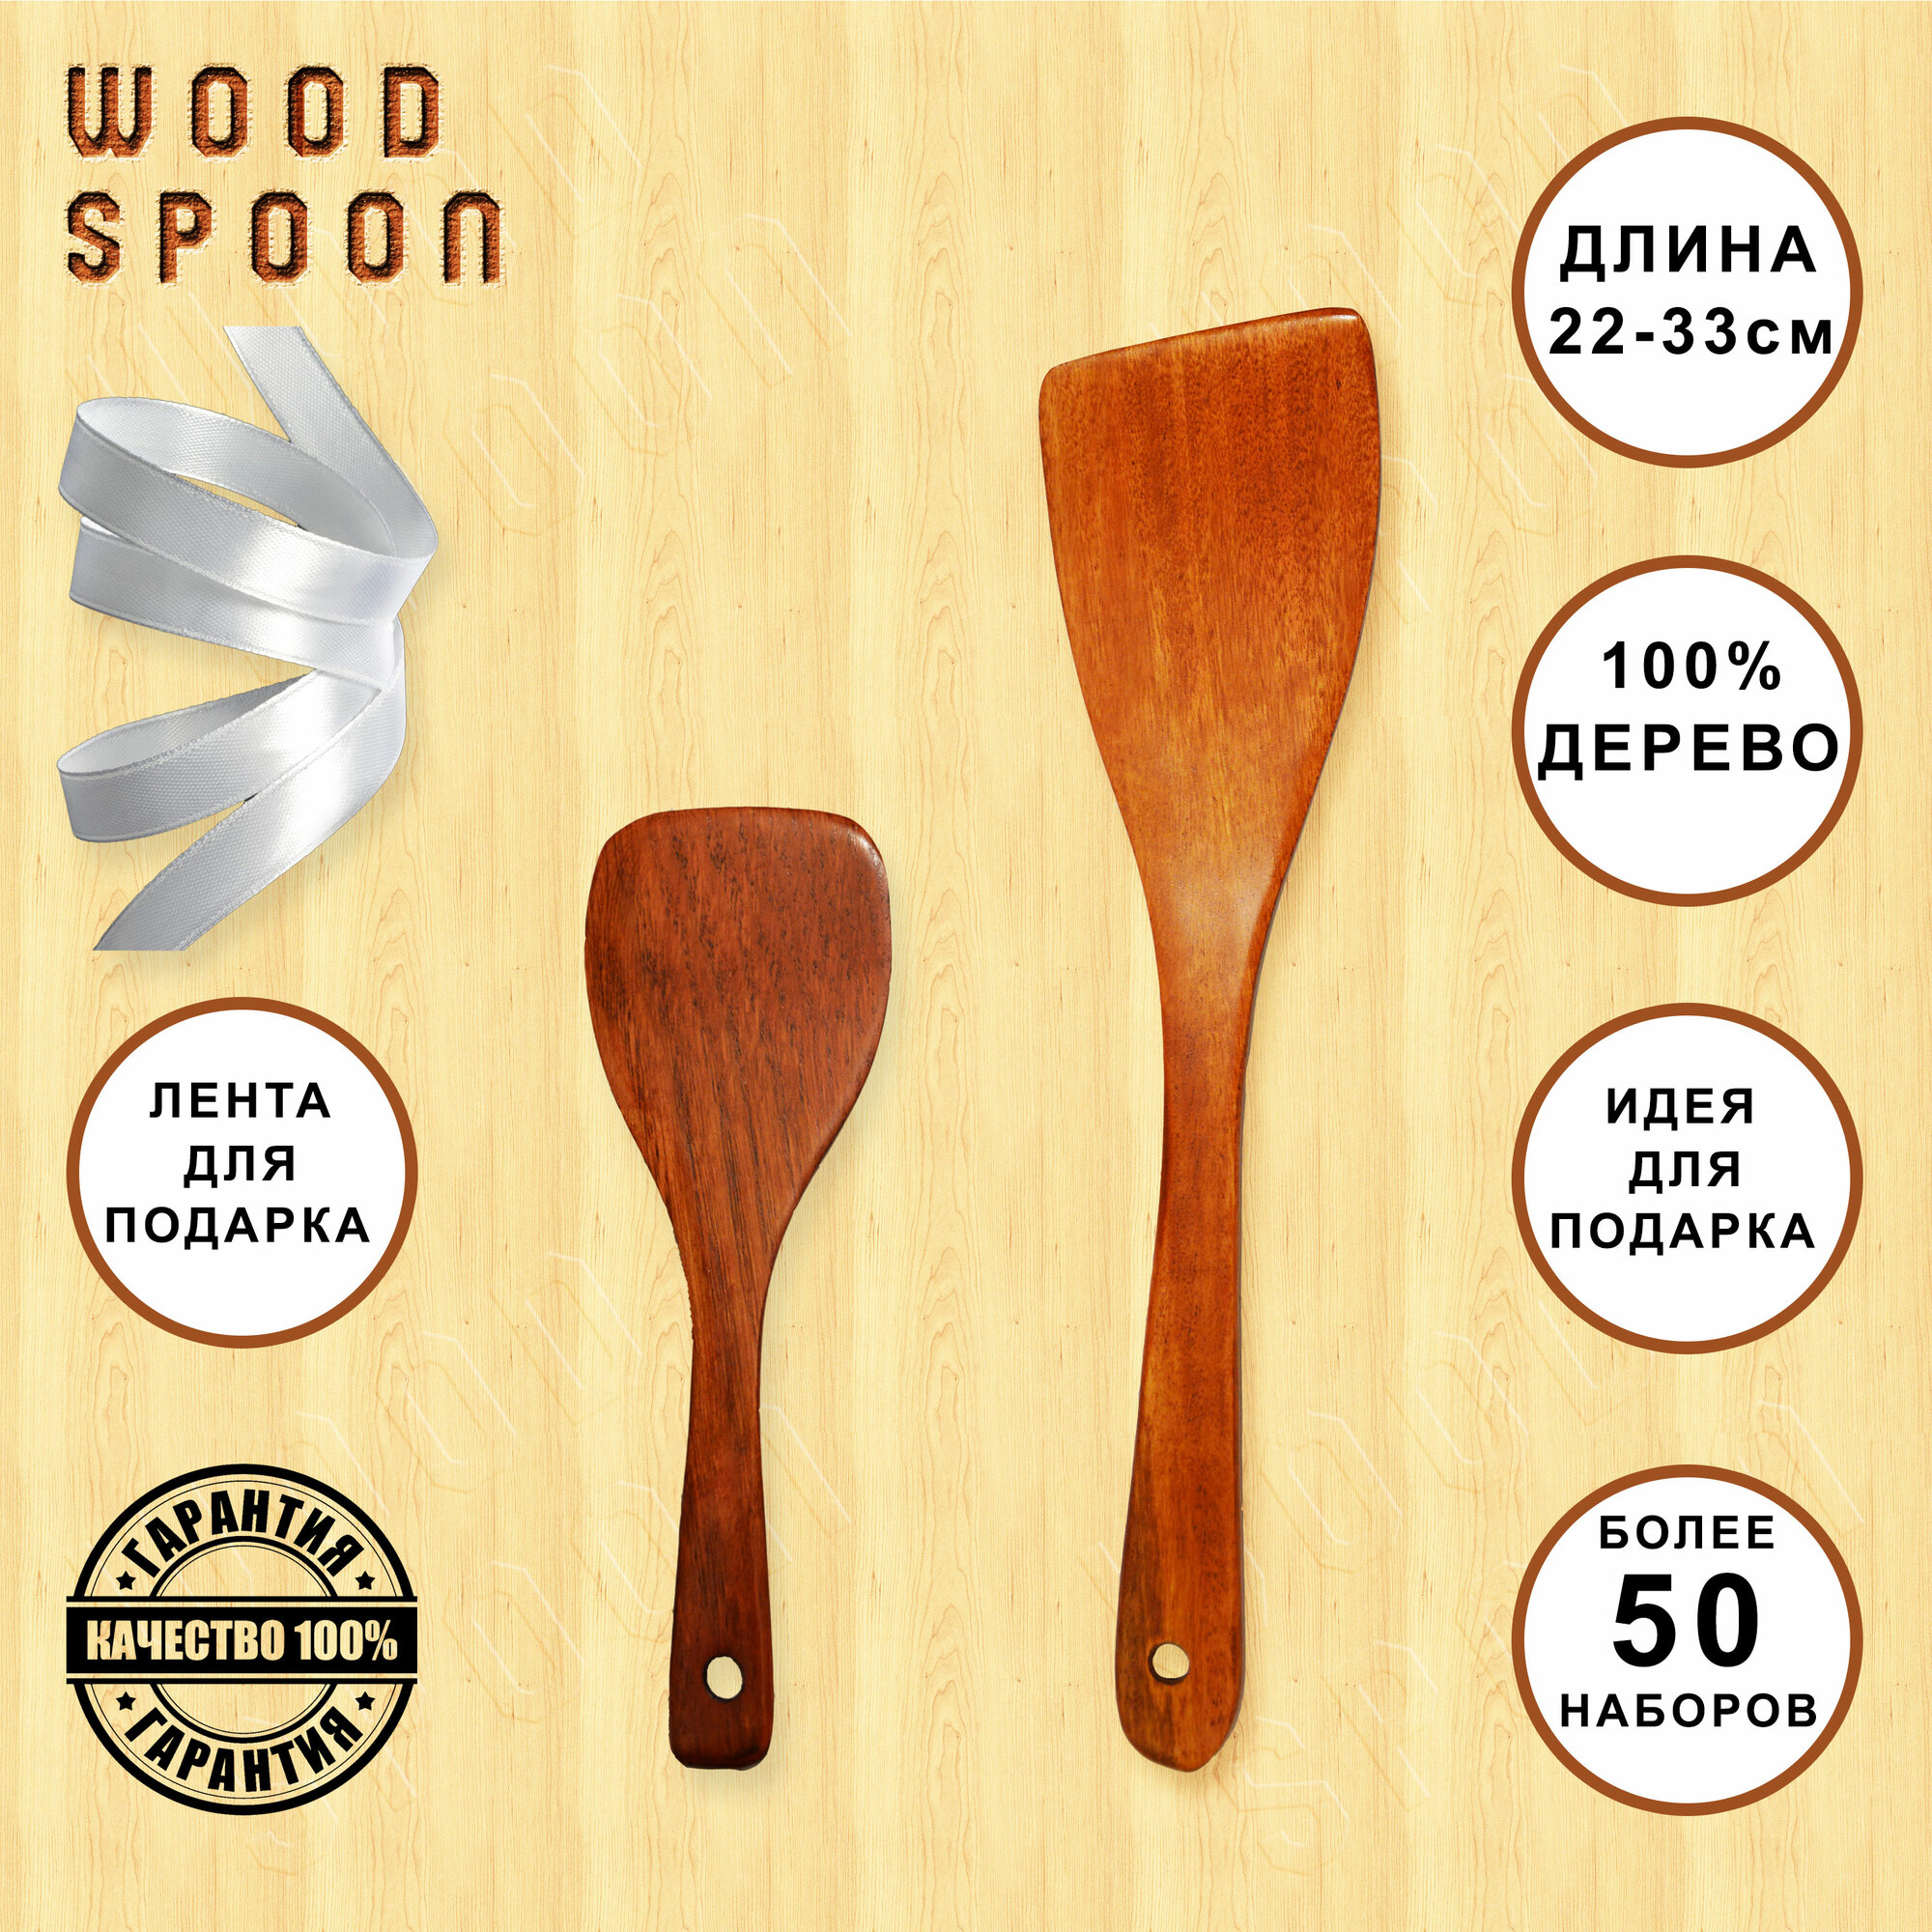 Набор кухонной навески деревянный, лопатка кухонная кулинарная 22 см - 1 шт, лопатка кухонная кулинарная 33 см - 1 шт